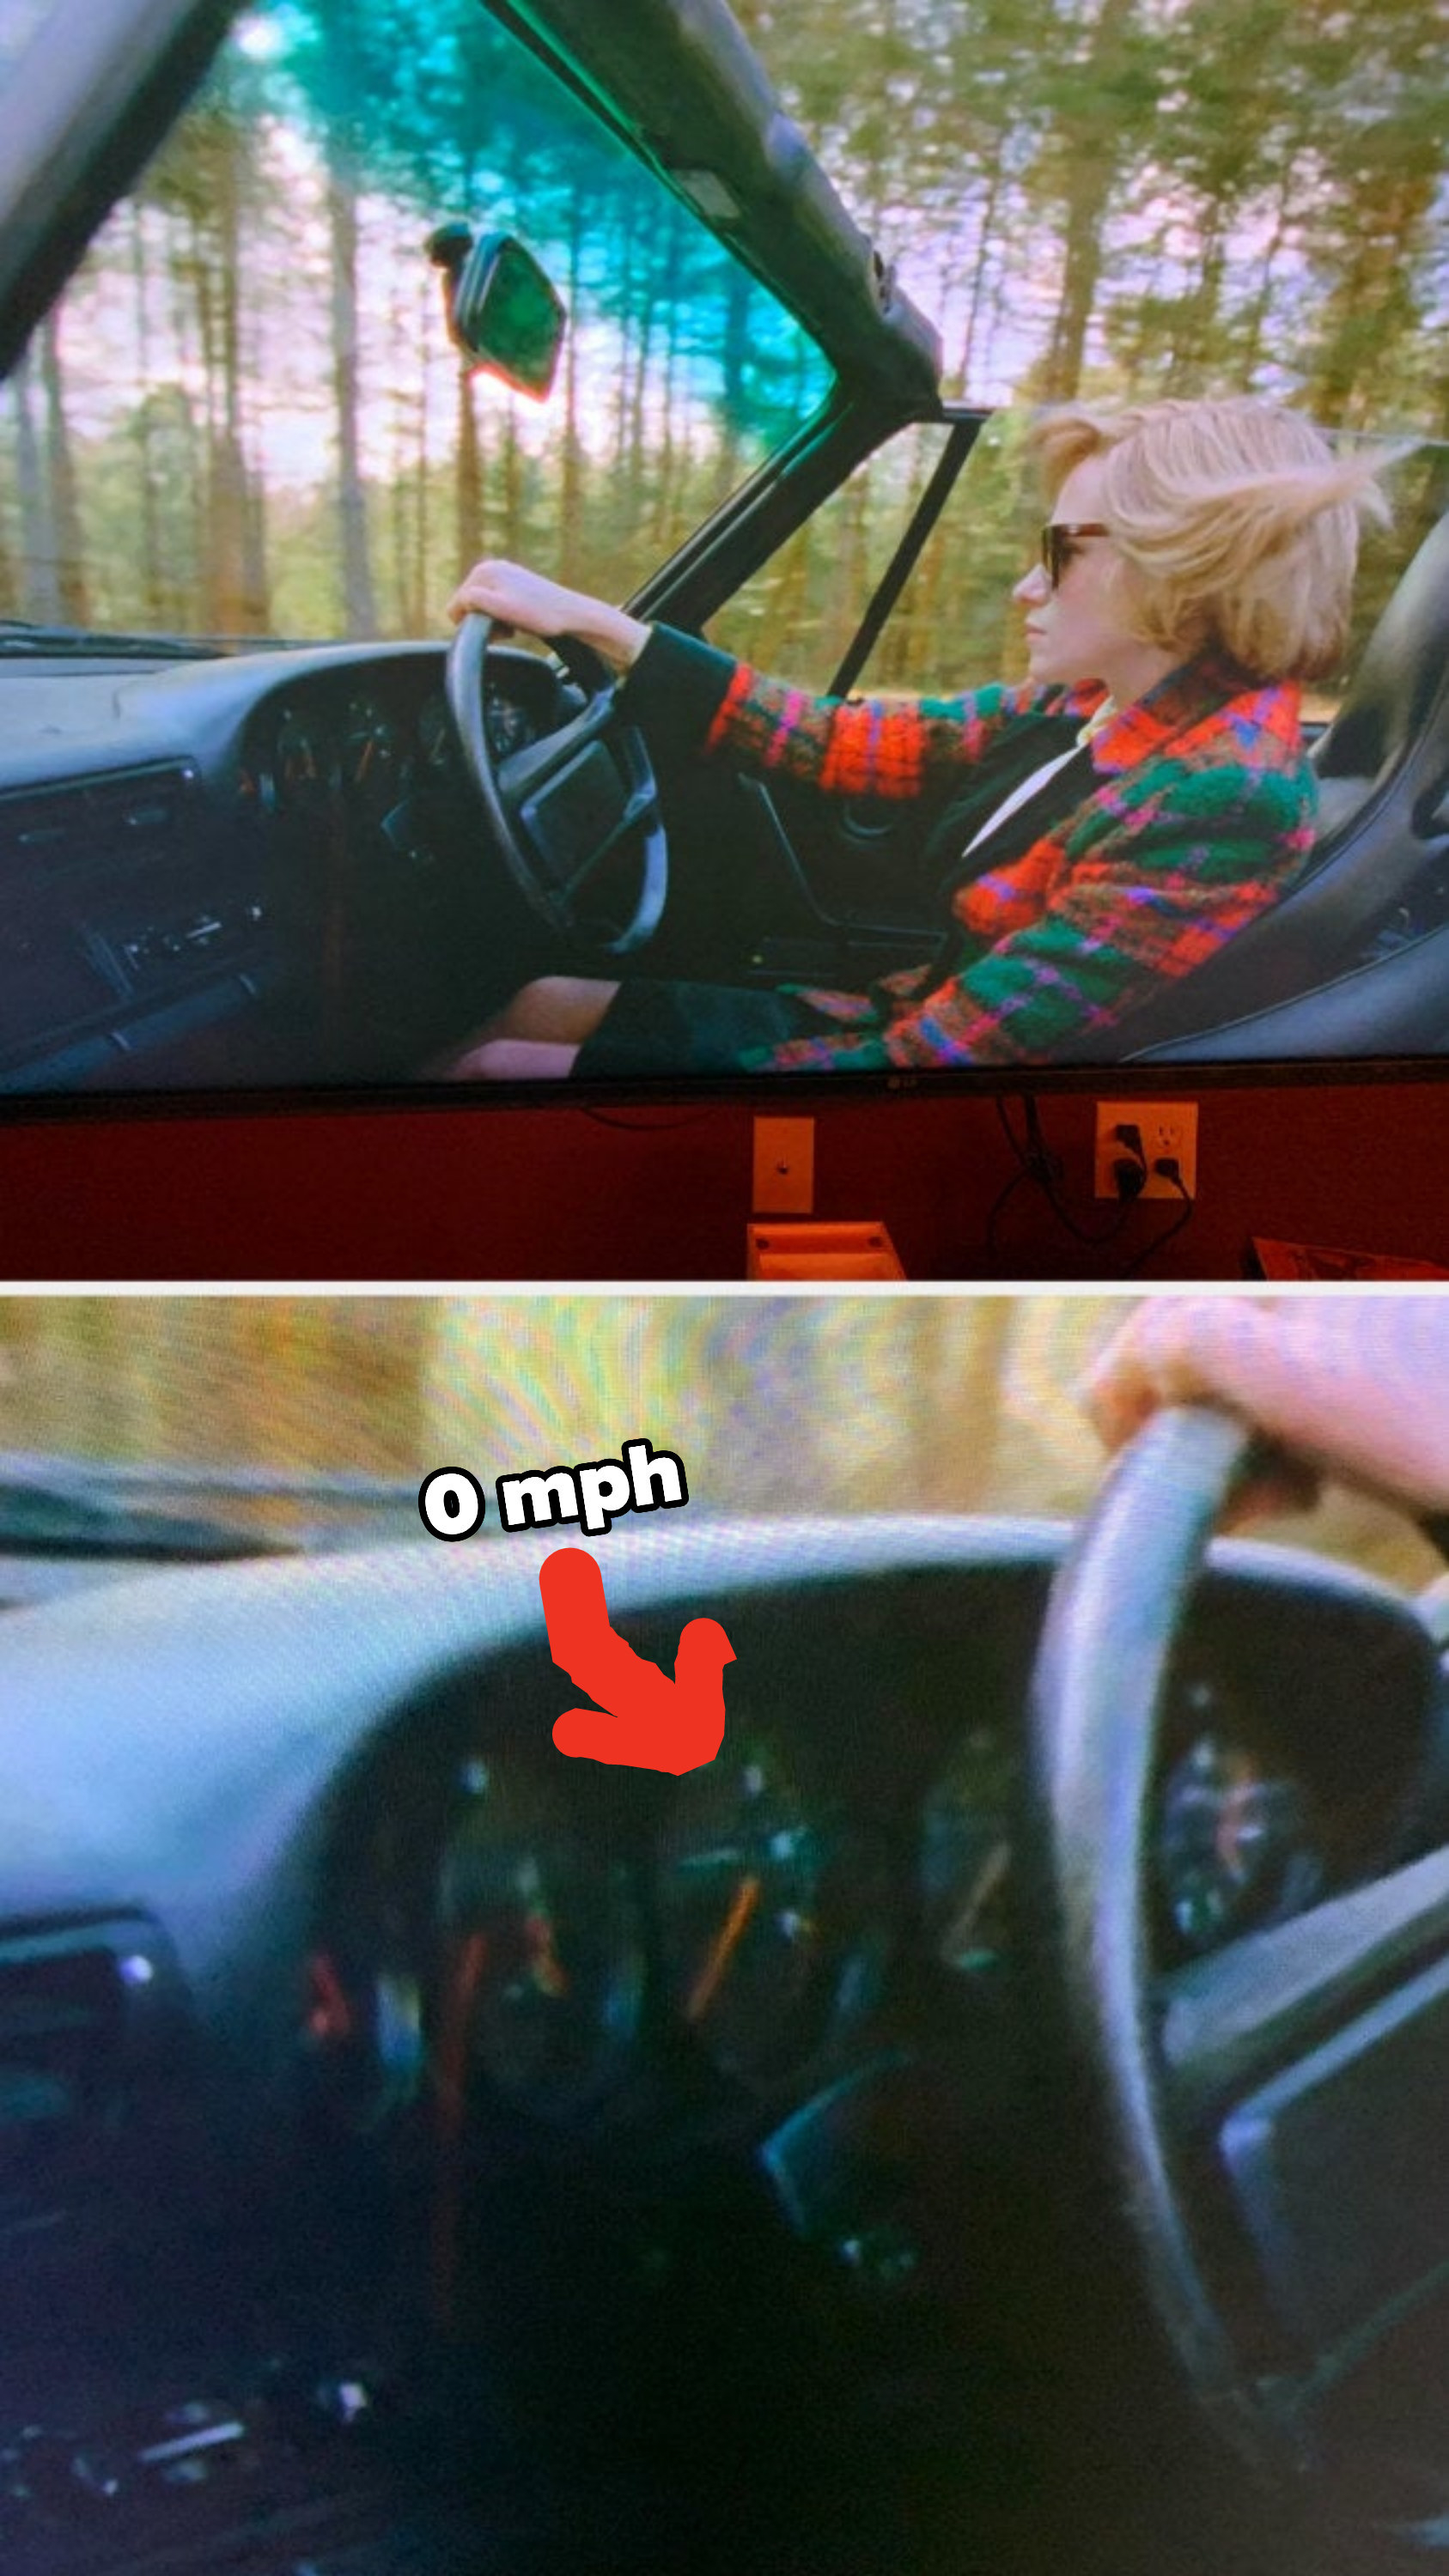 Princess Diana not actually driving the car